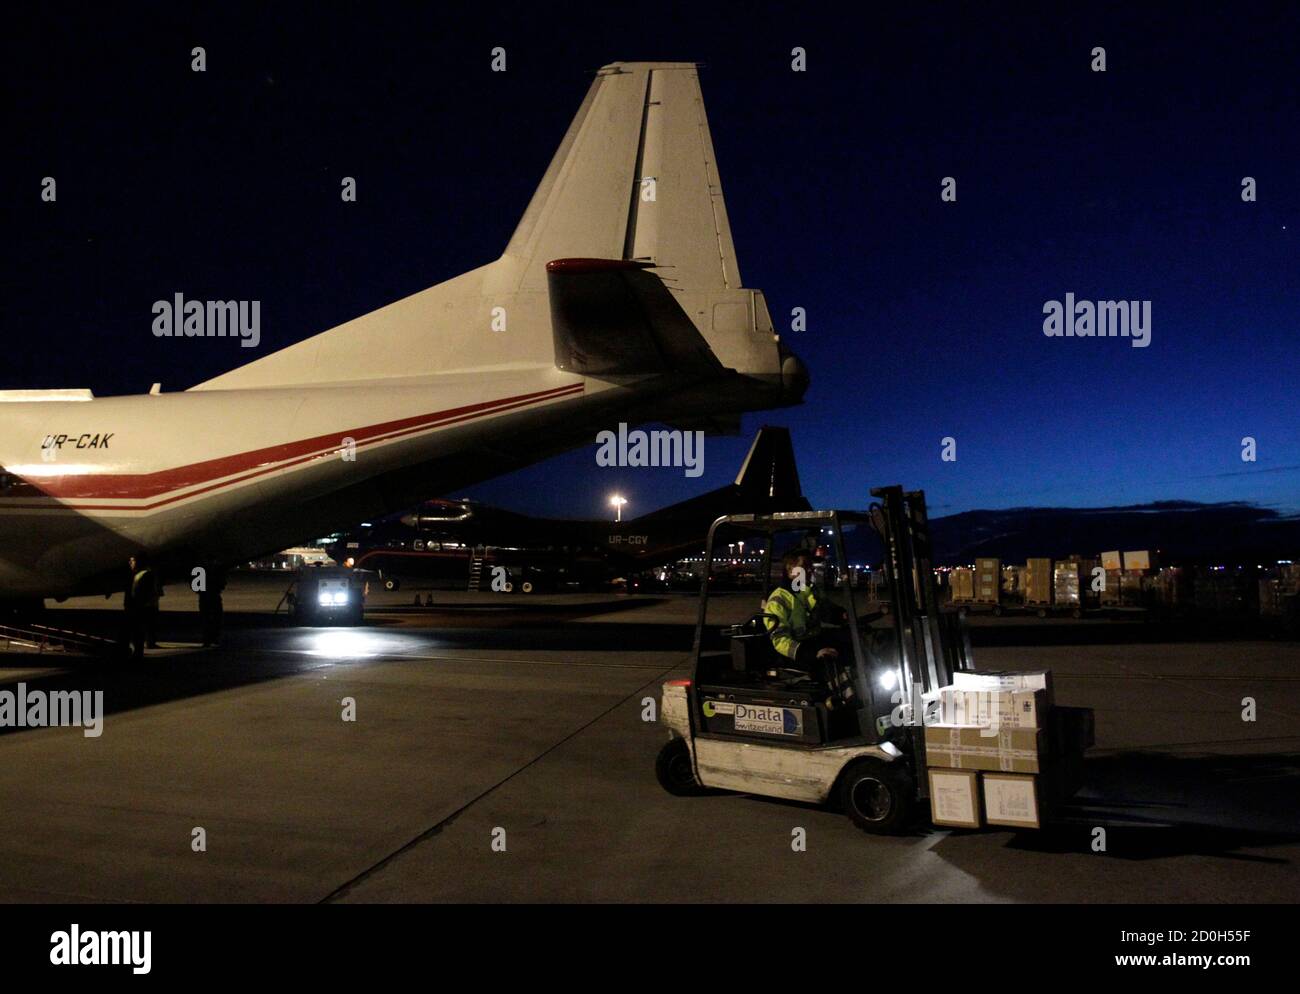 El personal de tierra carga suministros de ayuda médica para Libia en un avión Antonov 12 en el aeropuerto de Cointrin en Ginebra el 25 de febrero de 2011. El Comité Internacional de la Cruz Roja (CICR) está enviando 16 toneladas de suministros médicos a Libia divididos en dos aviones, uno de ellos a Egipto y el otro a Túnez. REUTERS/Denis Balibouse (SUIZA - Tags: POLÍTICA) Foto de stock